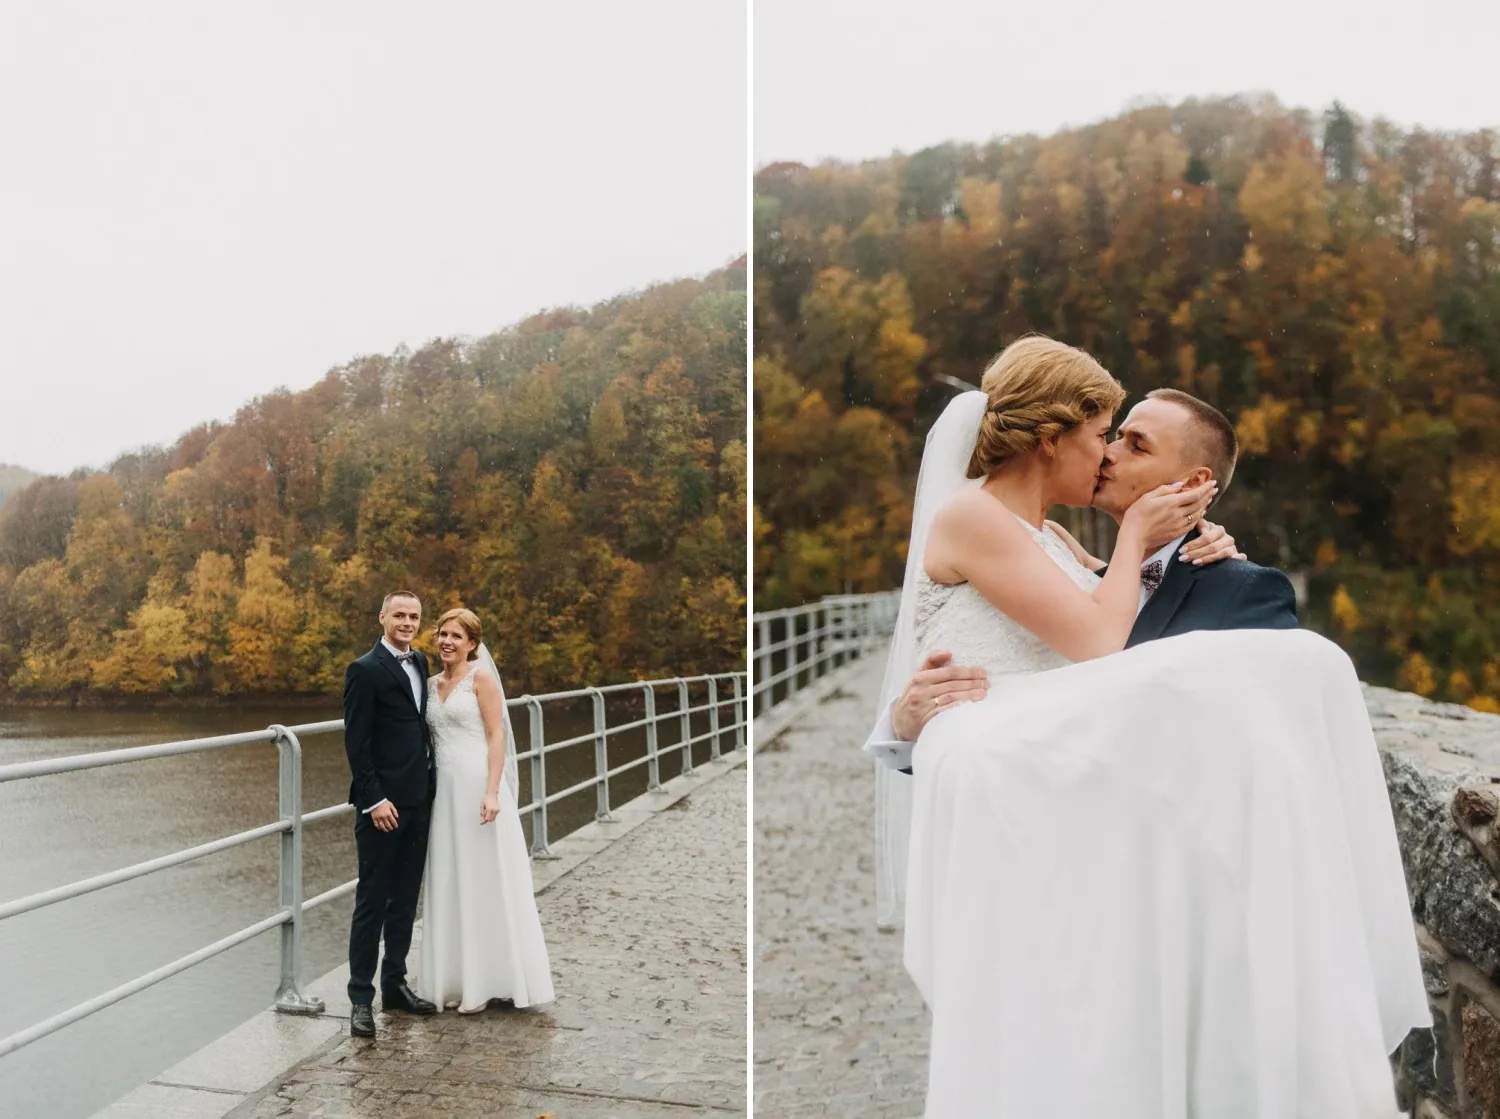 martynahubert_aftersession_15.webp - Martyna & Hubert- Monika Chmielewska - wedding, portaits, family photography - Munich